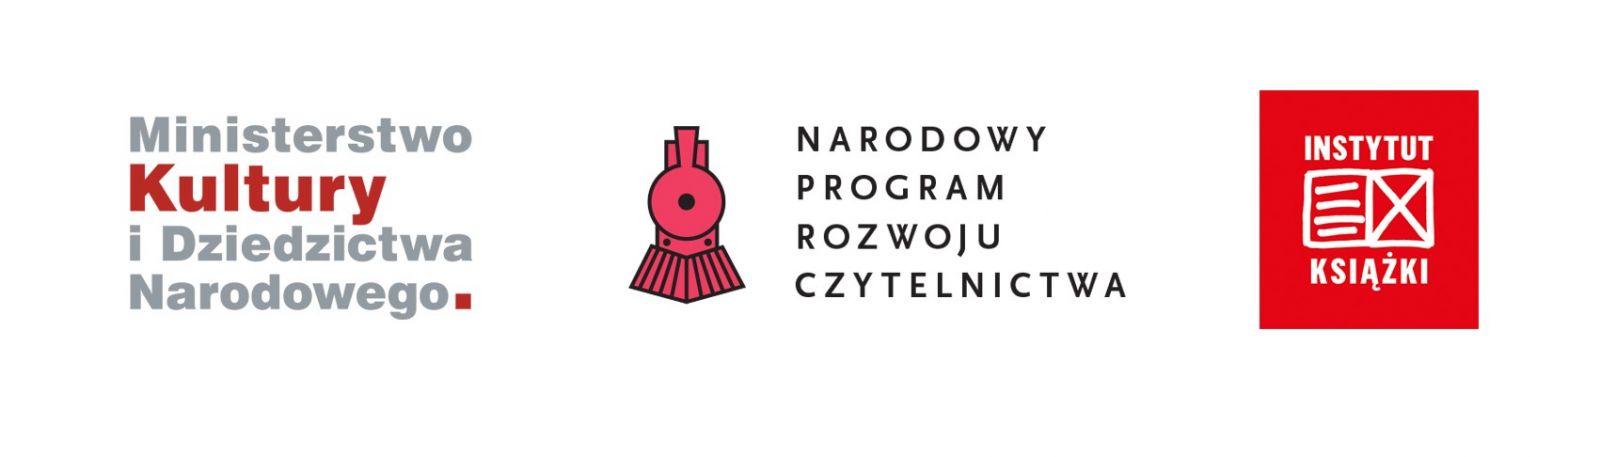 Logo Ministerstwa Kultury i Dziedzictwa Narodowego, logo Narodowy Program Rozwoju Czytelnictwa, logo Instytut Książki